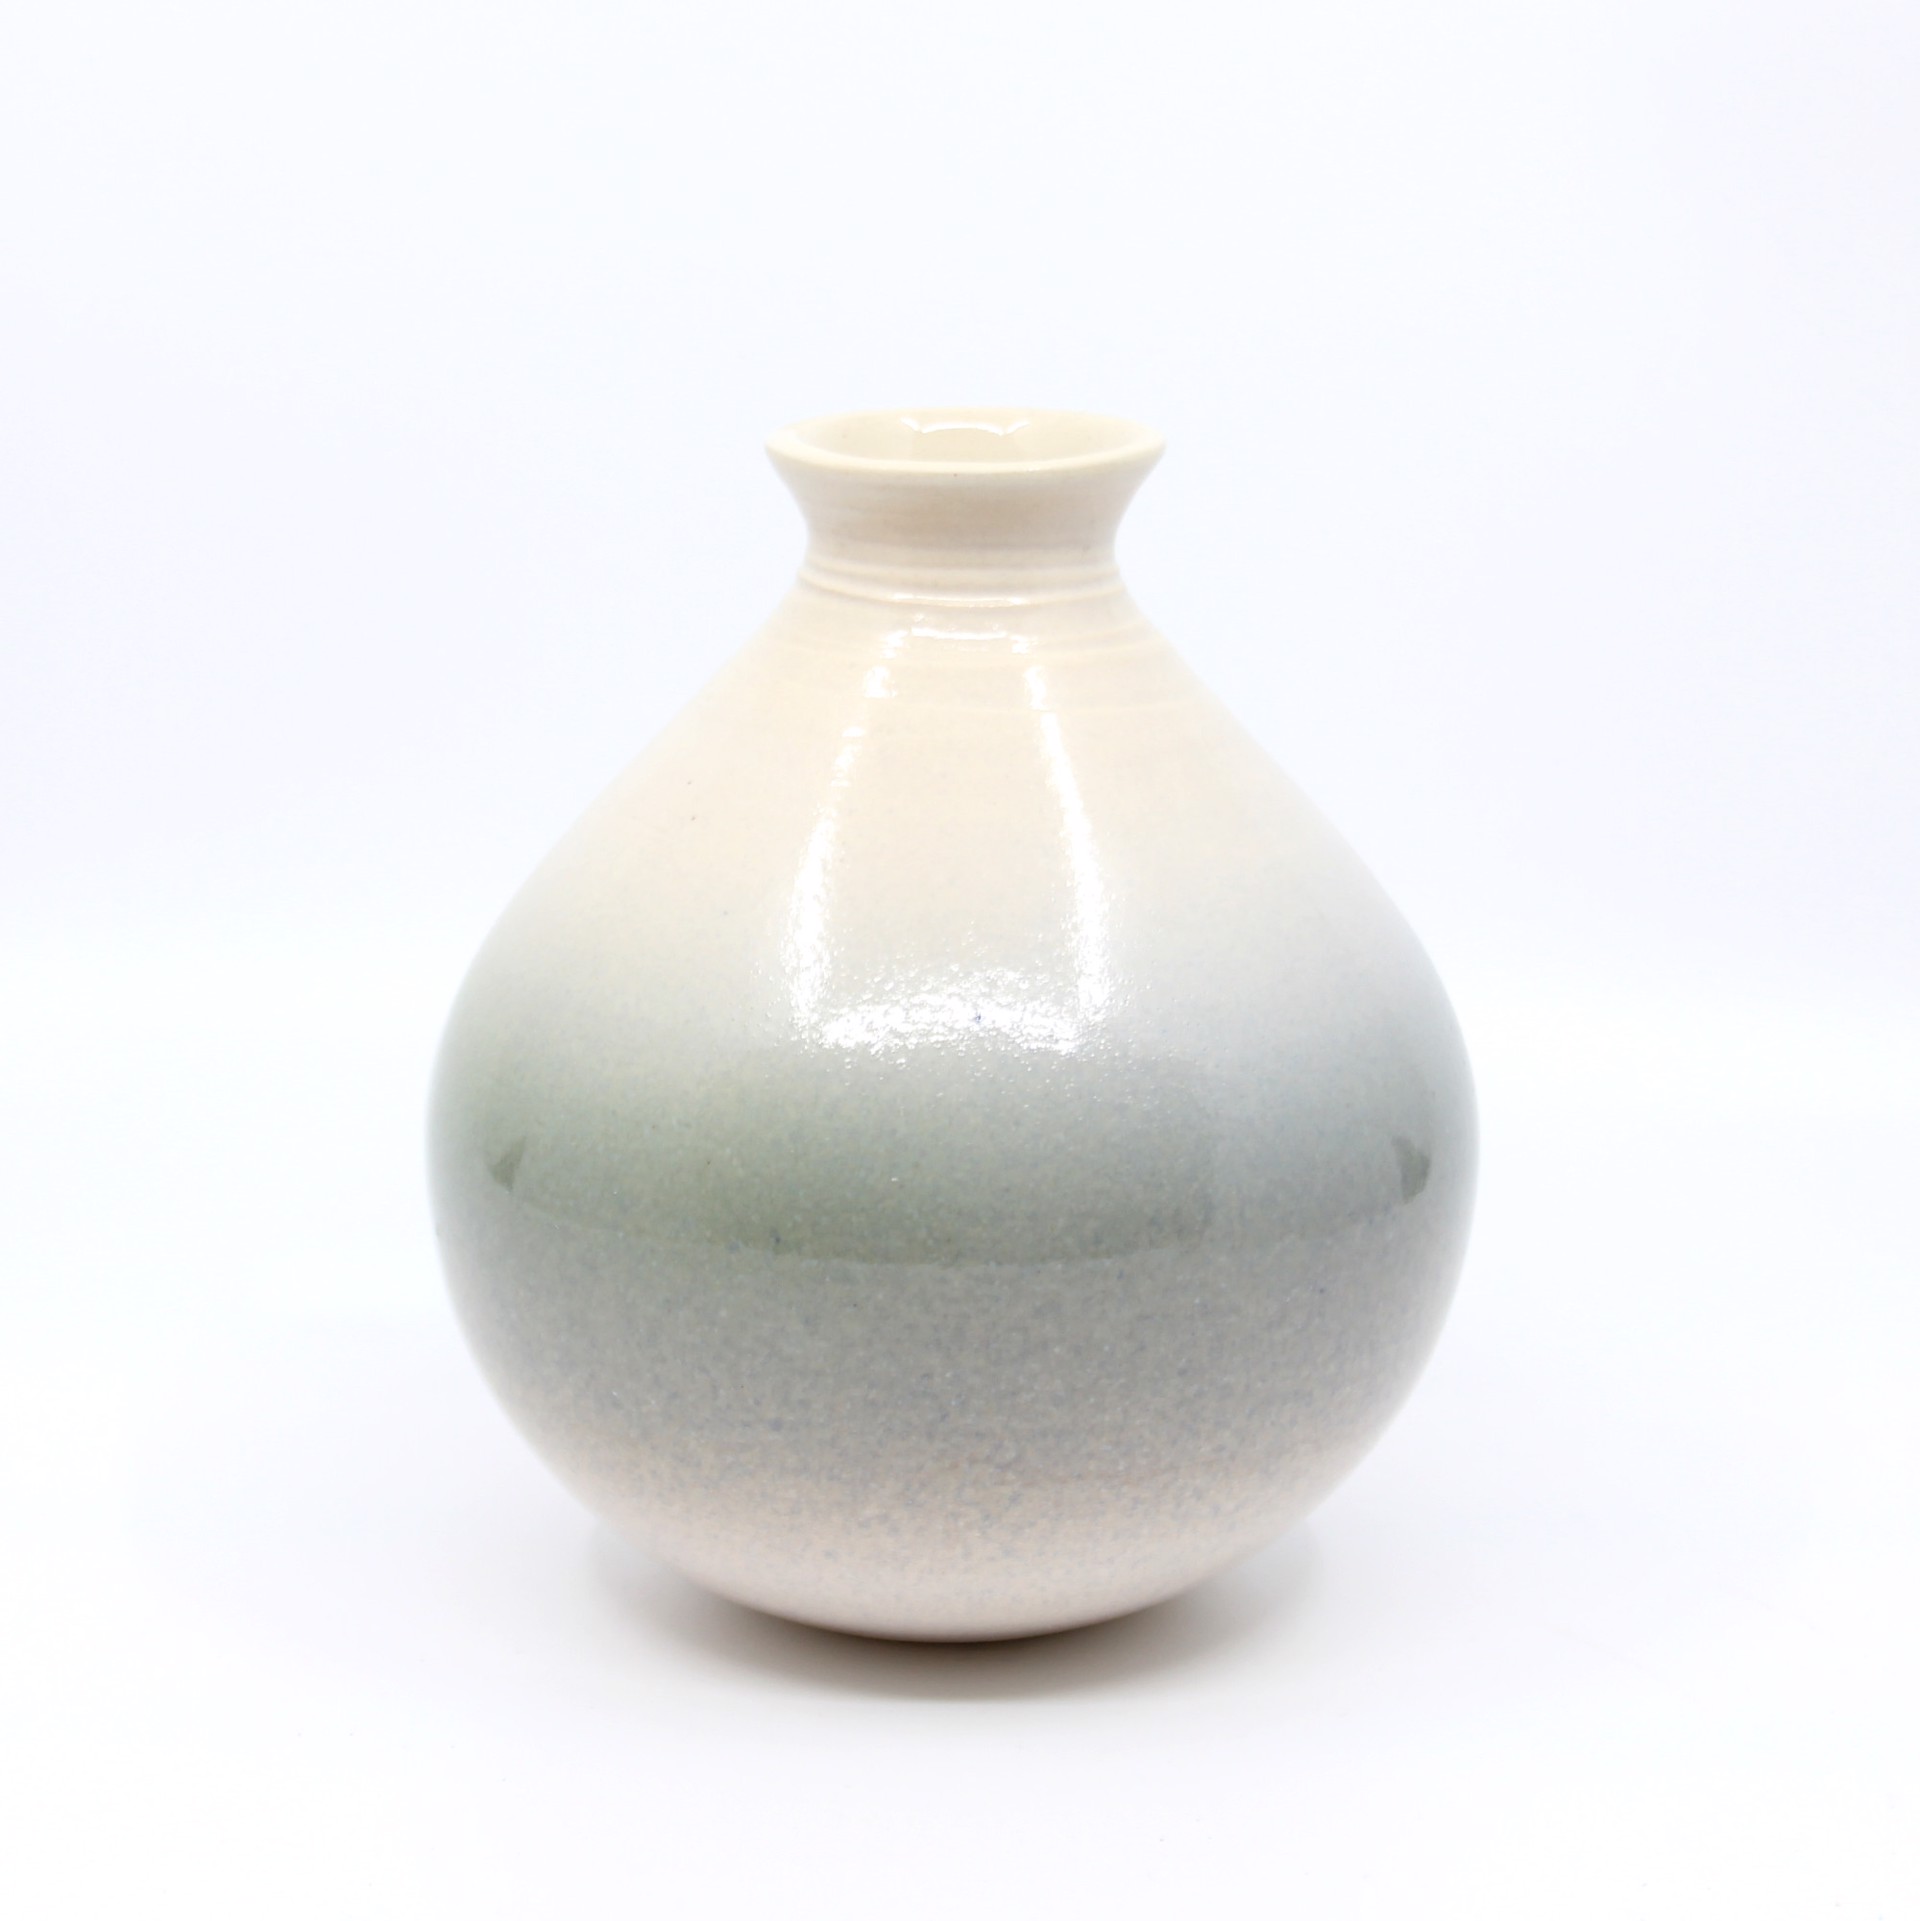 Vase 9 by Heather Bradley